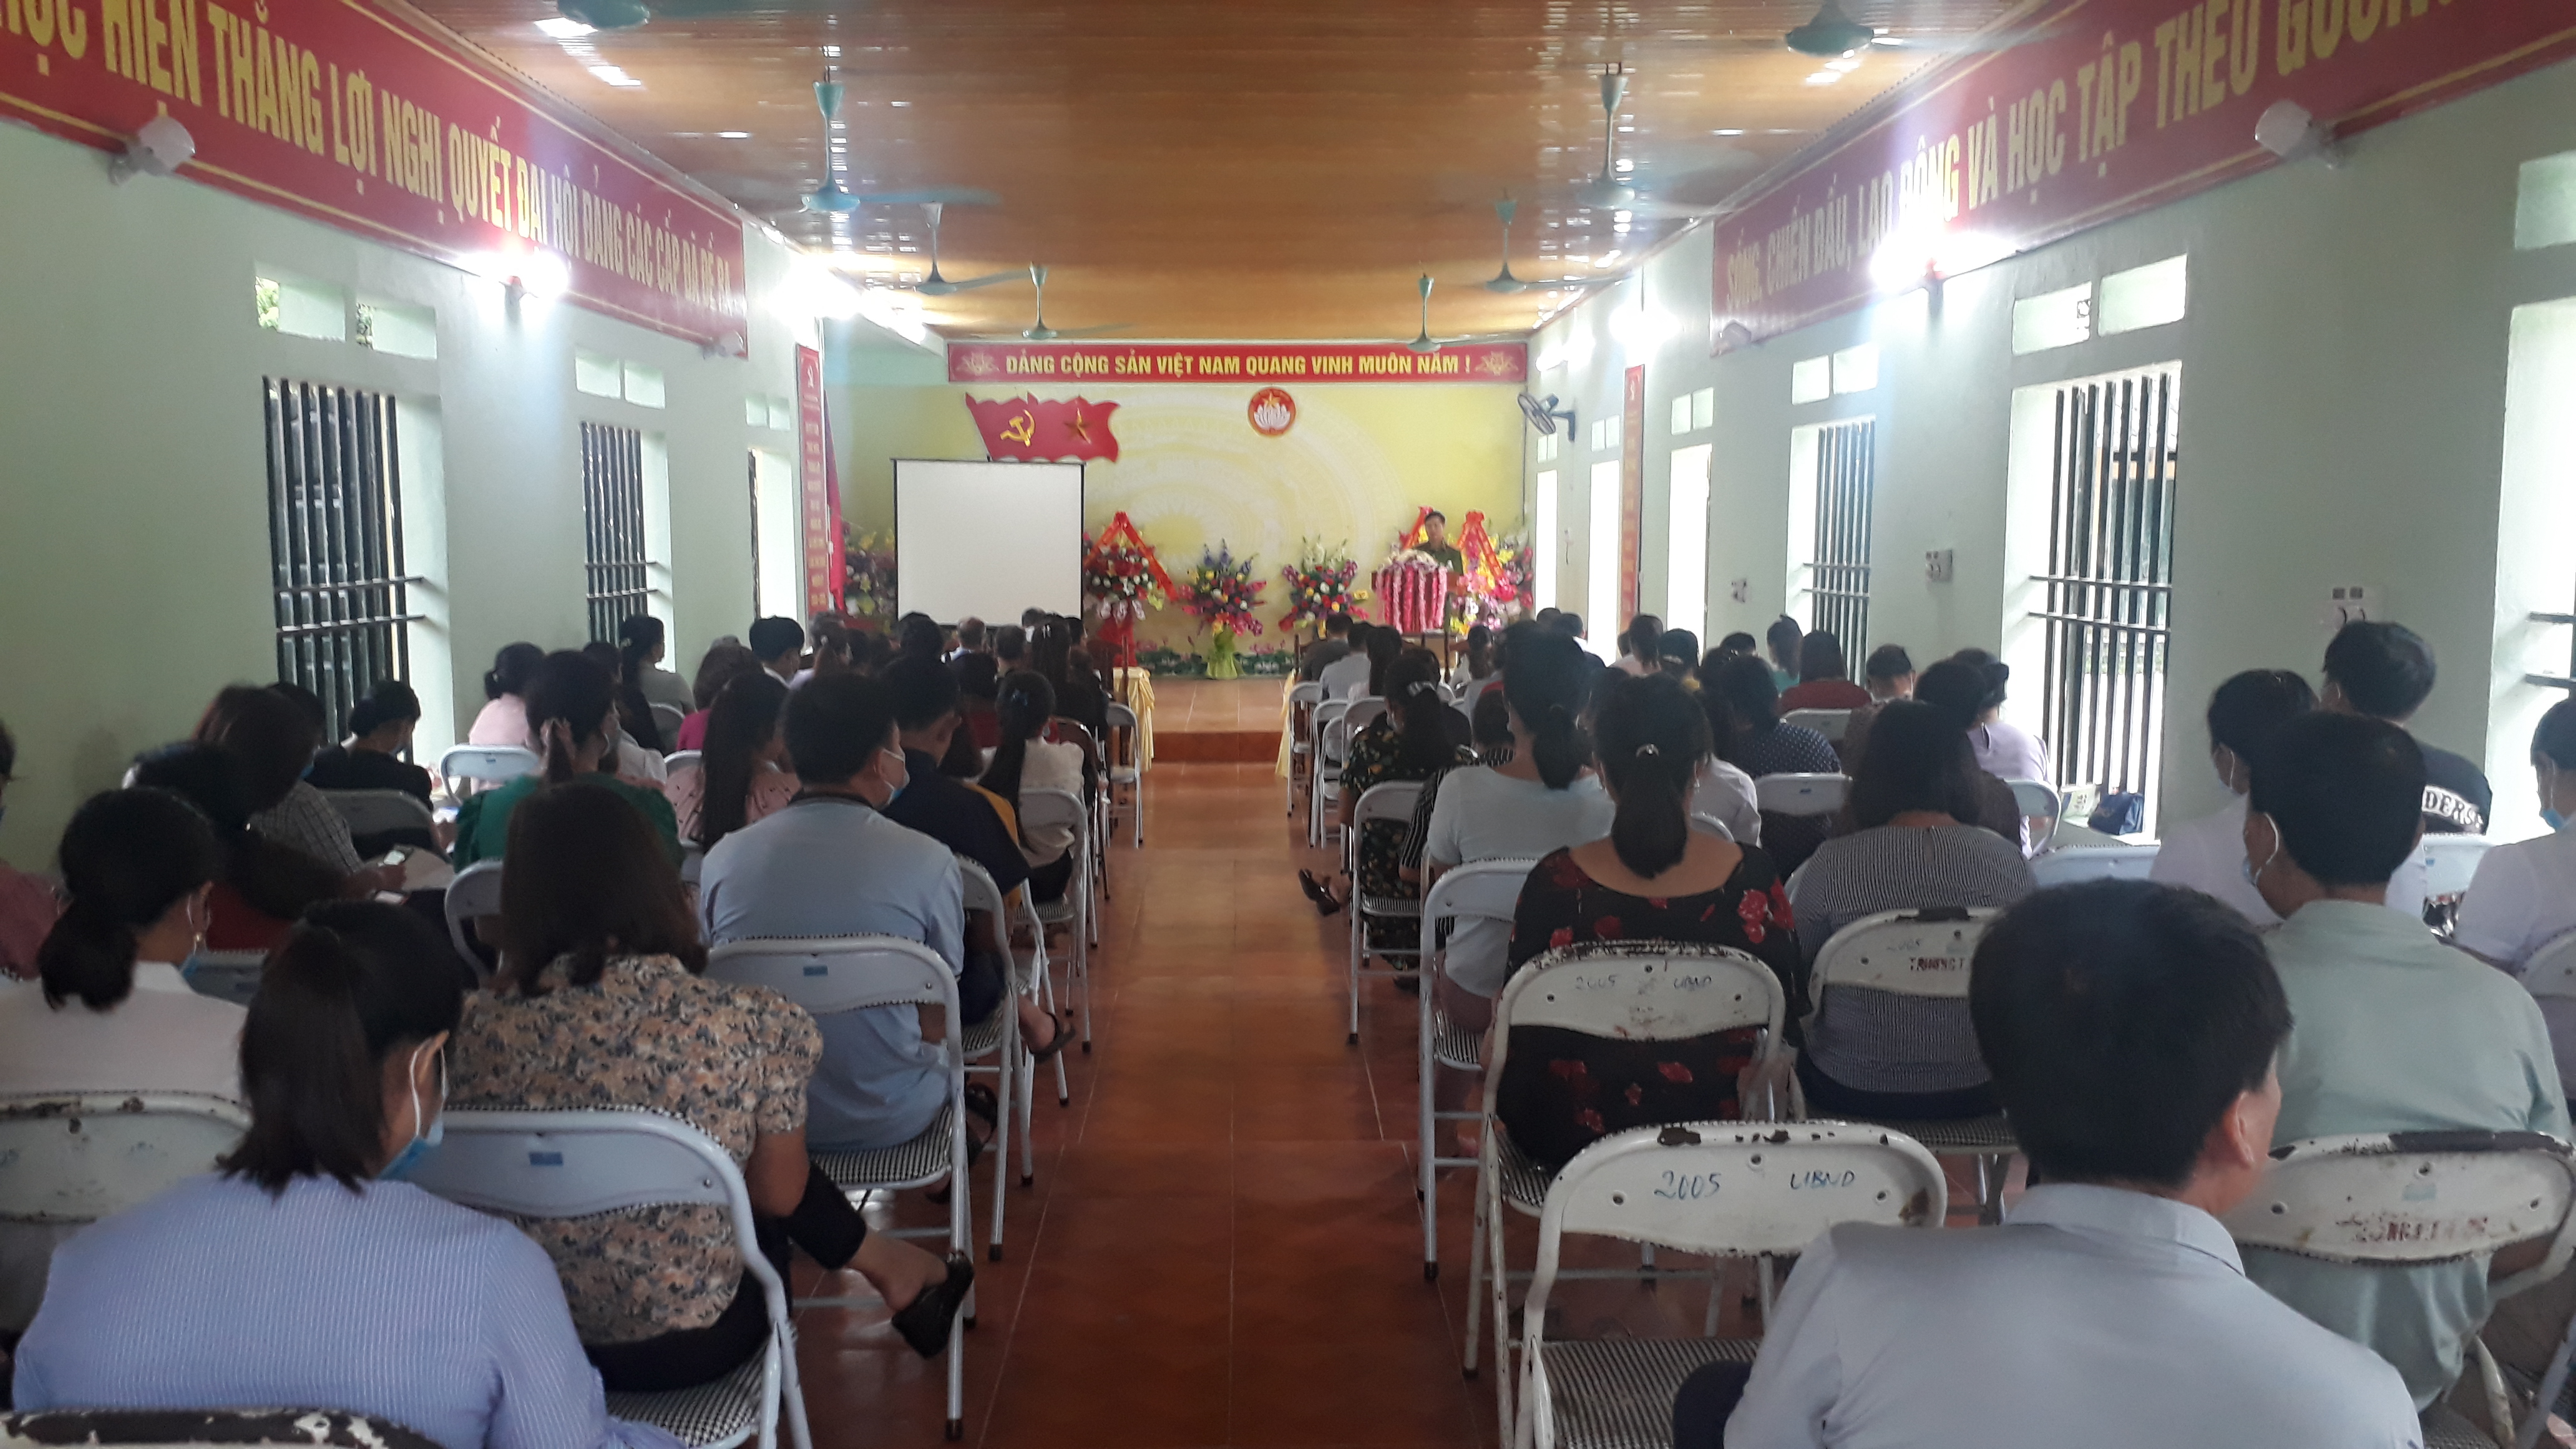 Xã Việt Vinh phối hợp với Ban chăm sóc sức khỏe nhân dân huyện Bắc Quang, tổ chức hội nghị nói chuyện chuyên đề về tảo hôn, kết hôn cận huyết thống và sinh con thứ 3 trở lên năm 2020.